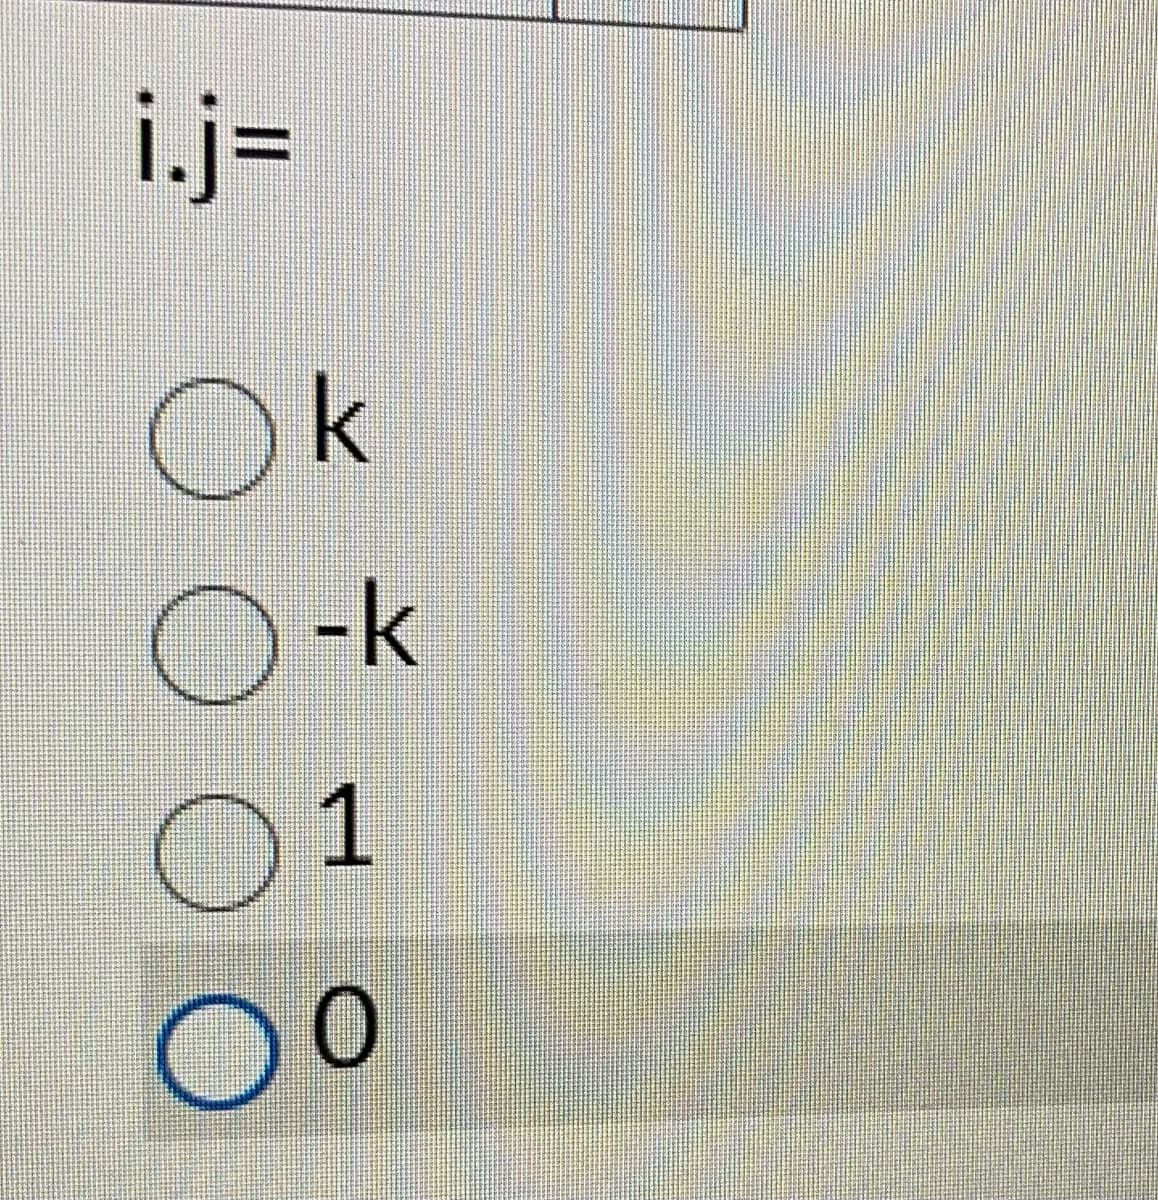 i.j=
Ok
D-к
1
000
0 0
Do